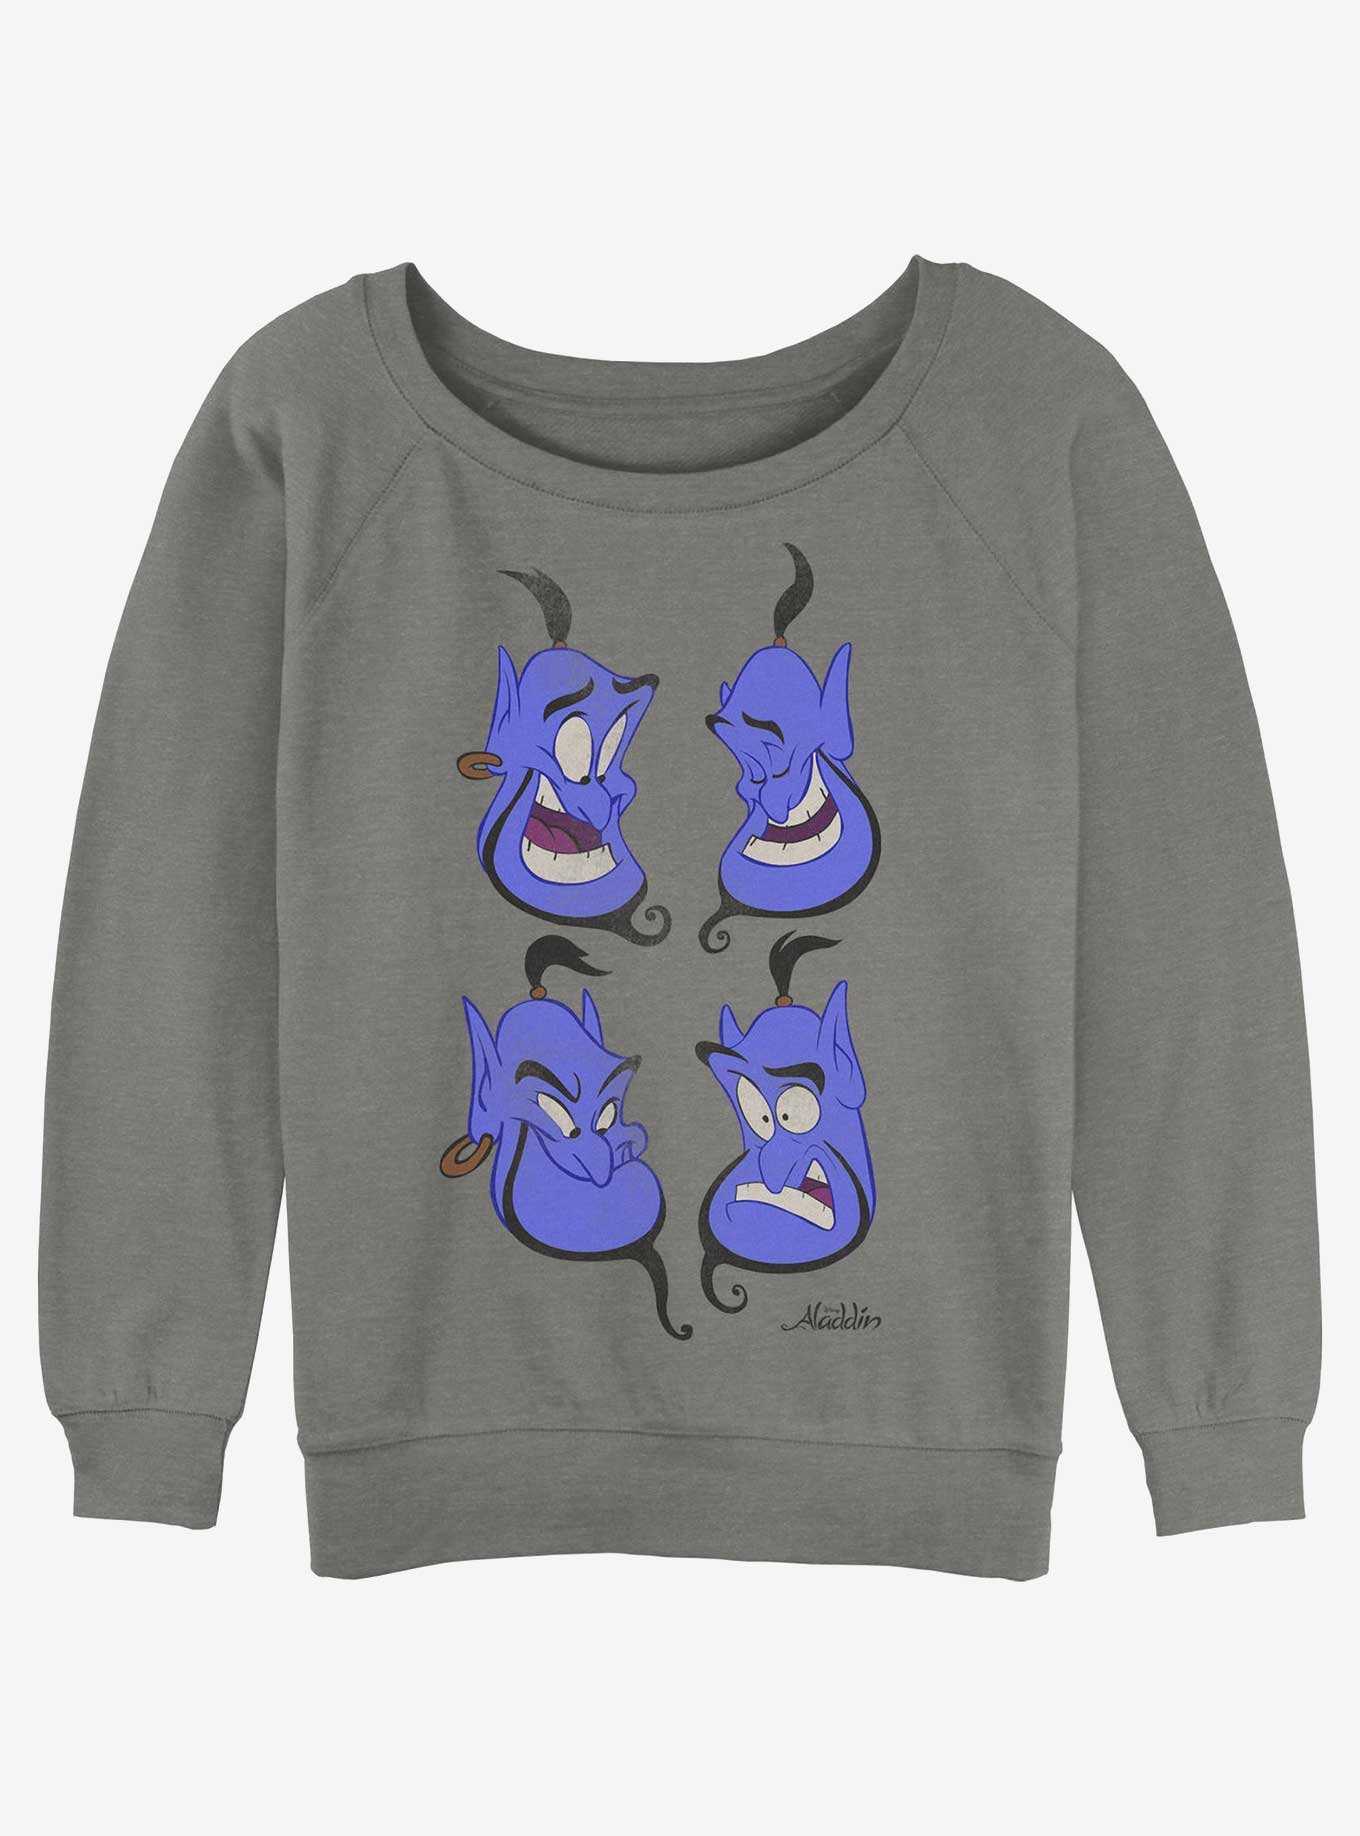 Disney Aladdin Genie Faces Girls Slouchy Sweatshirt, , hi-res